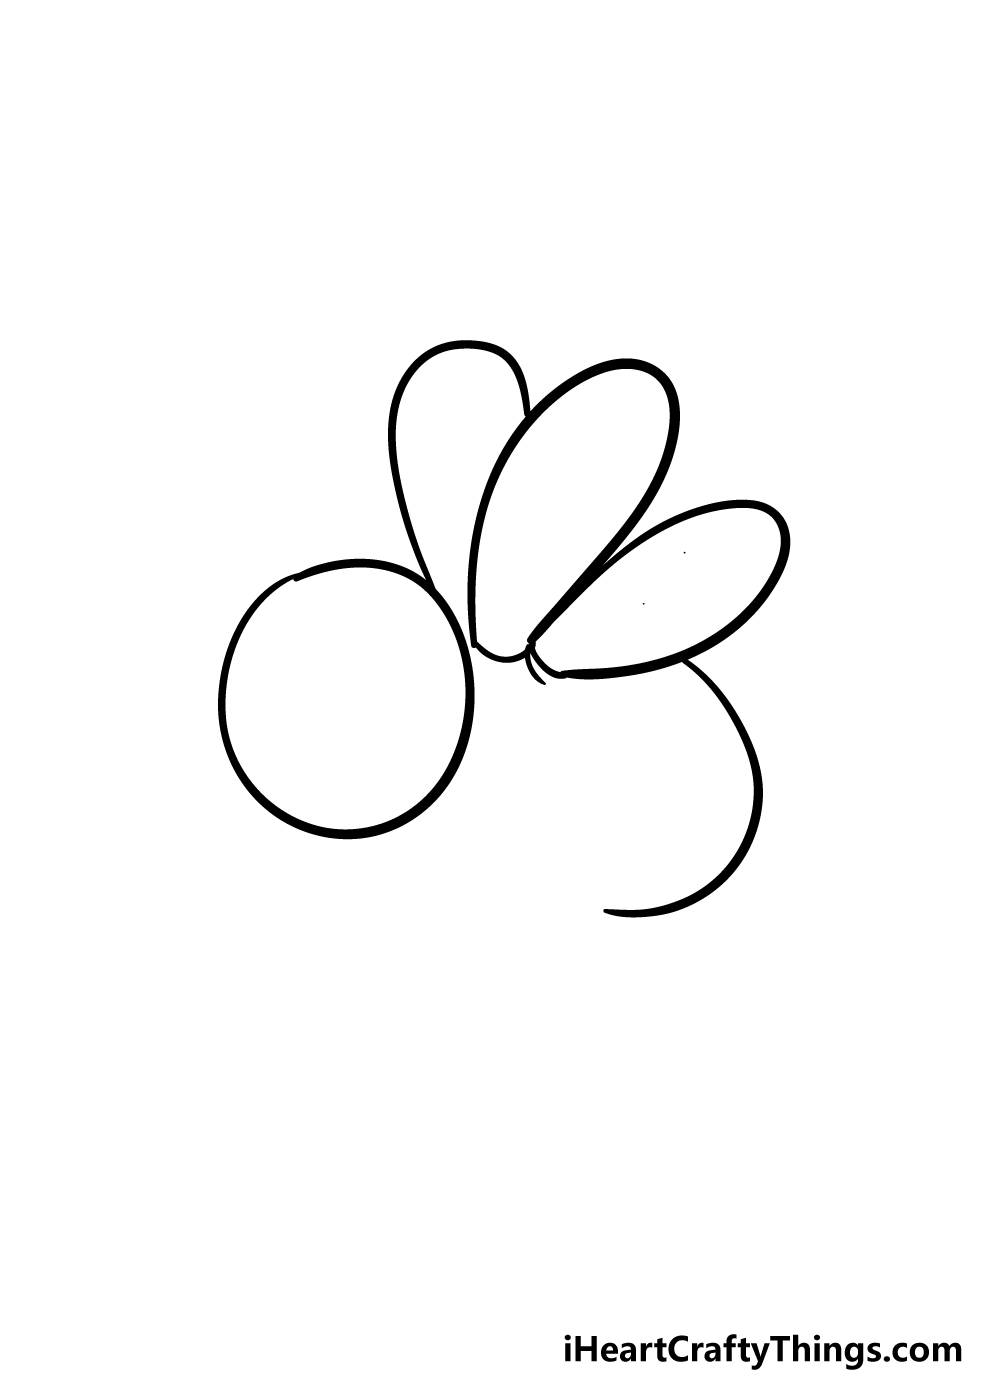 Bee3 - Hướng dẫn chi tiết cách vẽ con ong đơn giản với 7 bước cơ bản